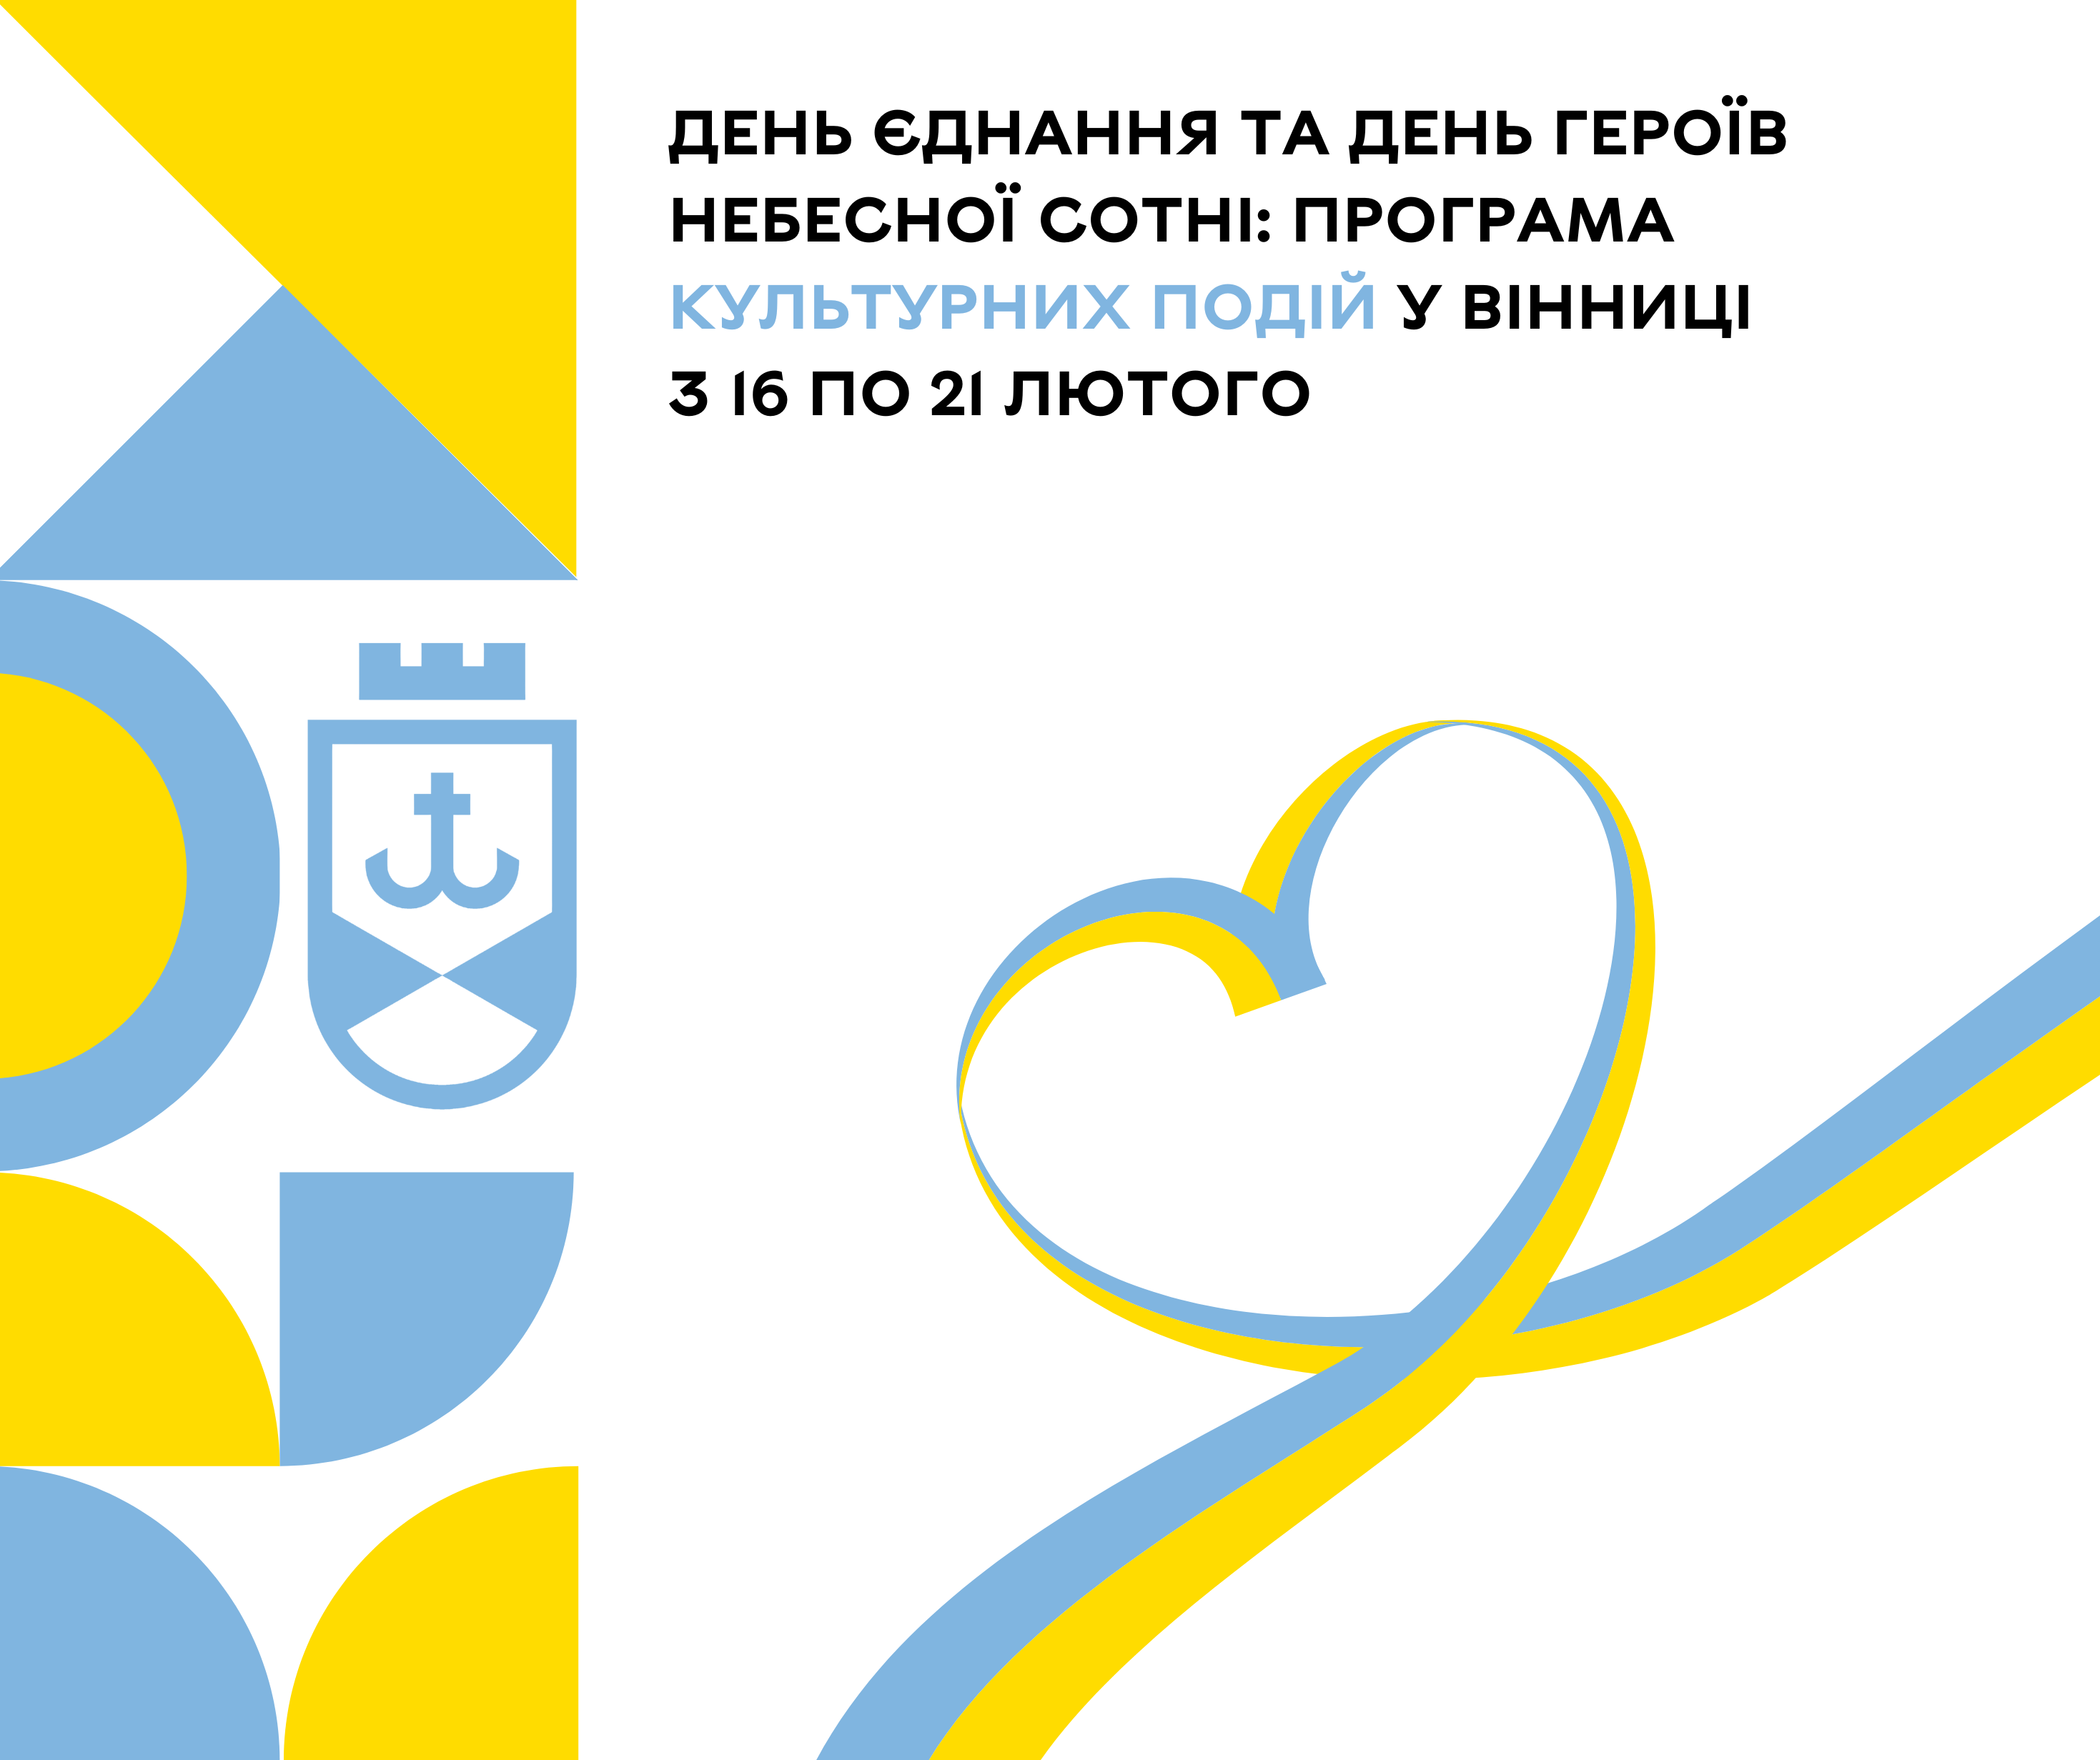 Яка програма культурних подій у Вінниці з 16 по 21 лютого?